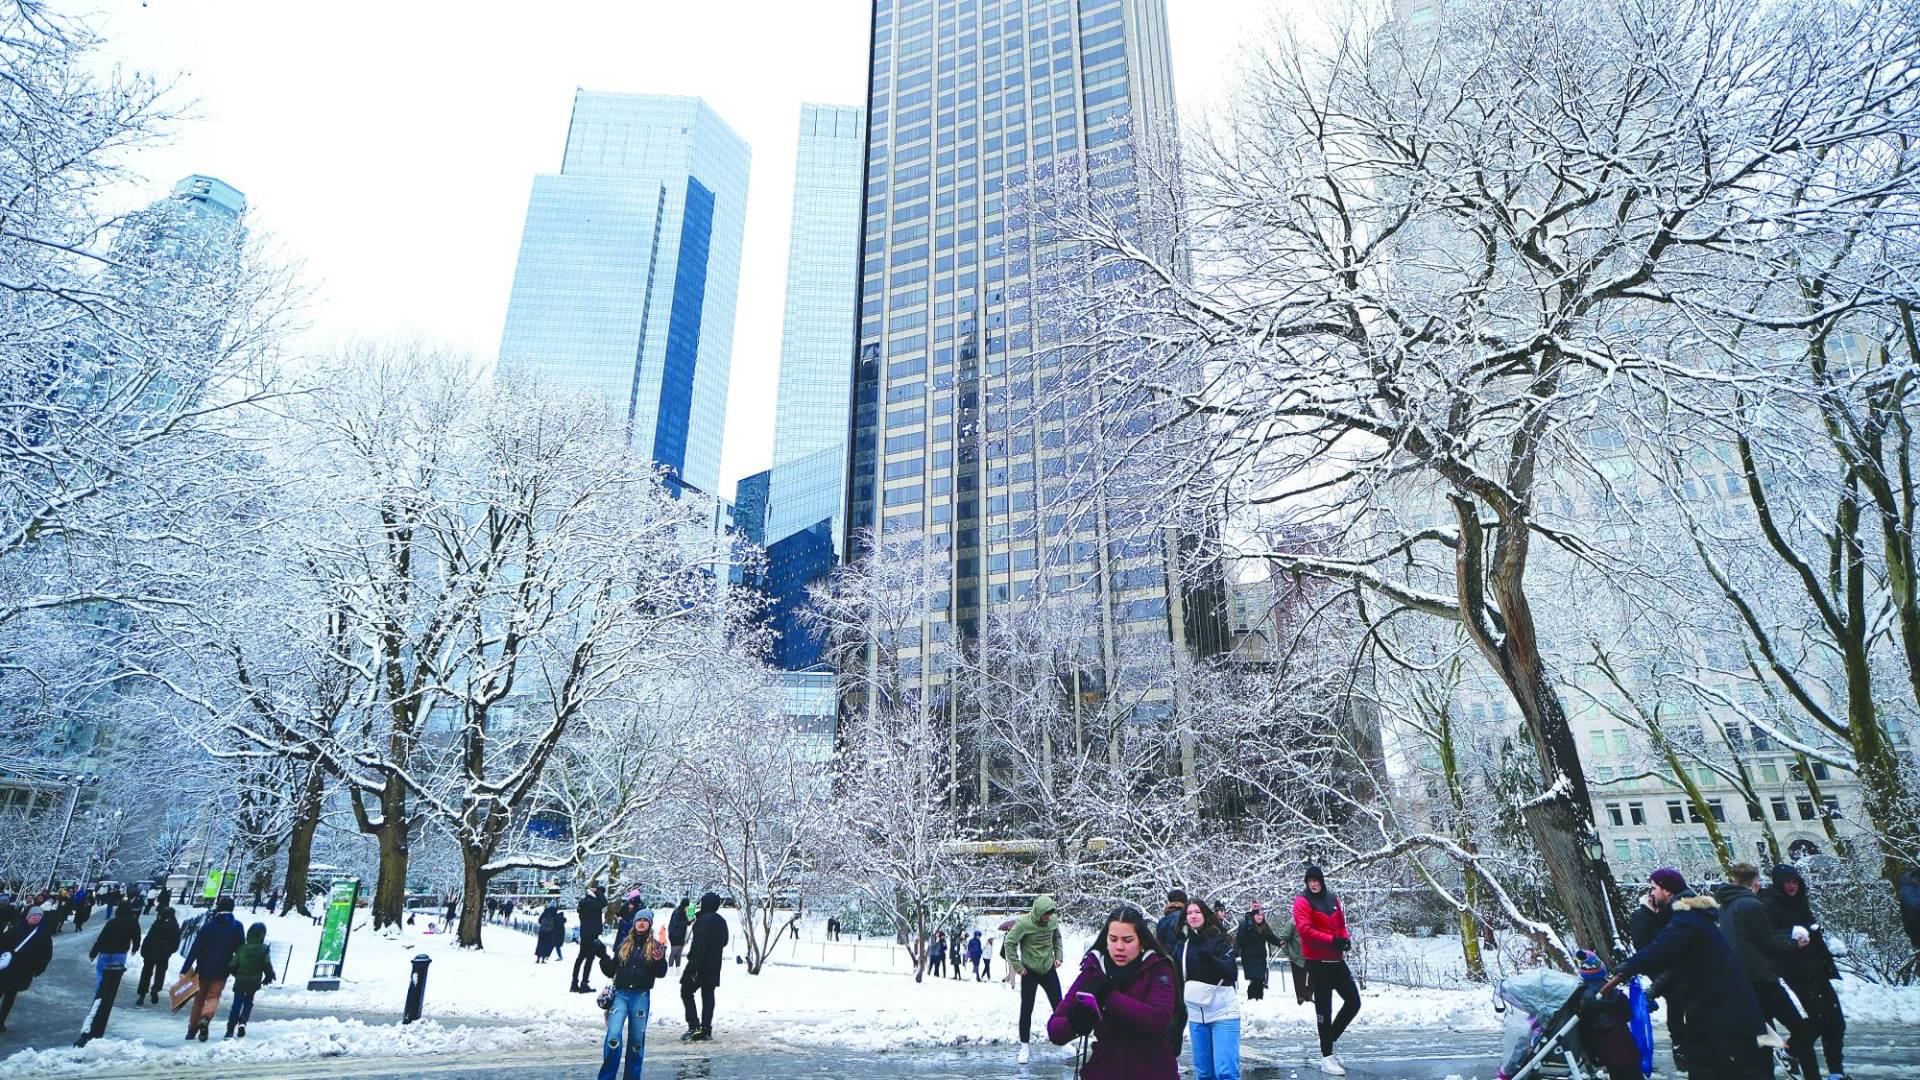 $!La ciudad de Nueva York se vistió de nieve y bajó el termómetro a temperaturas bajo cero. Hoy habrá actividad en la Corte del Distrito Sur.